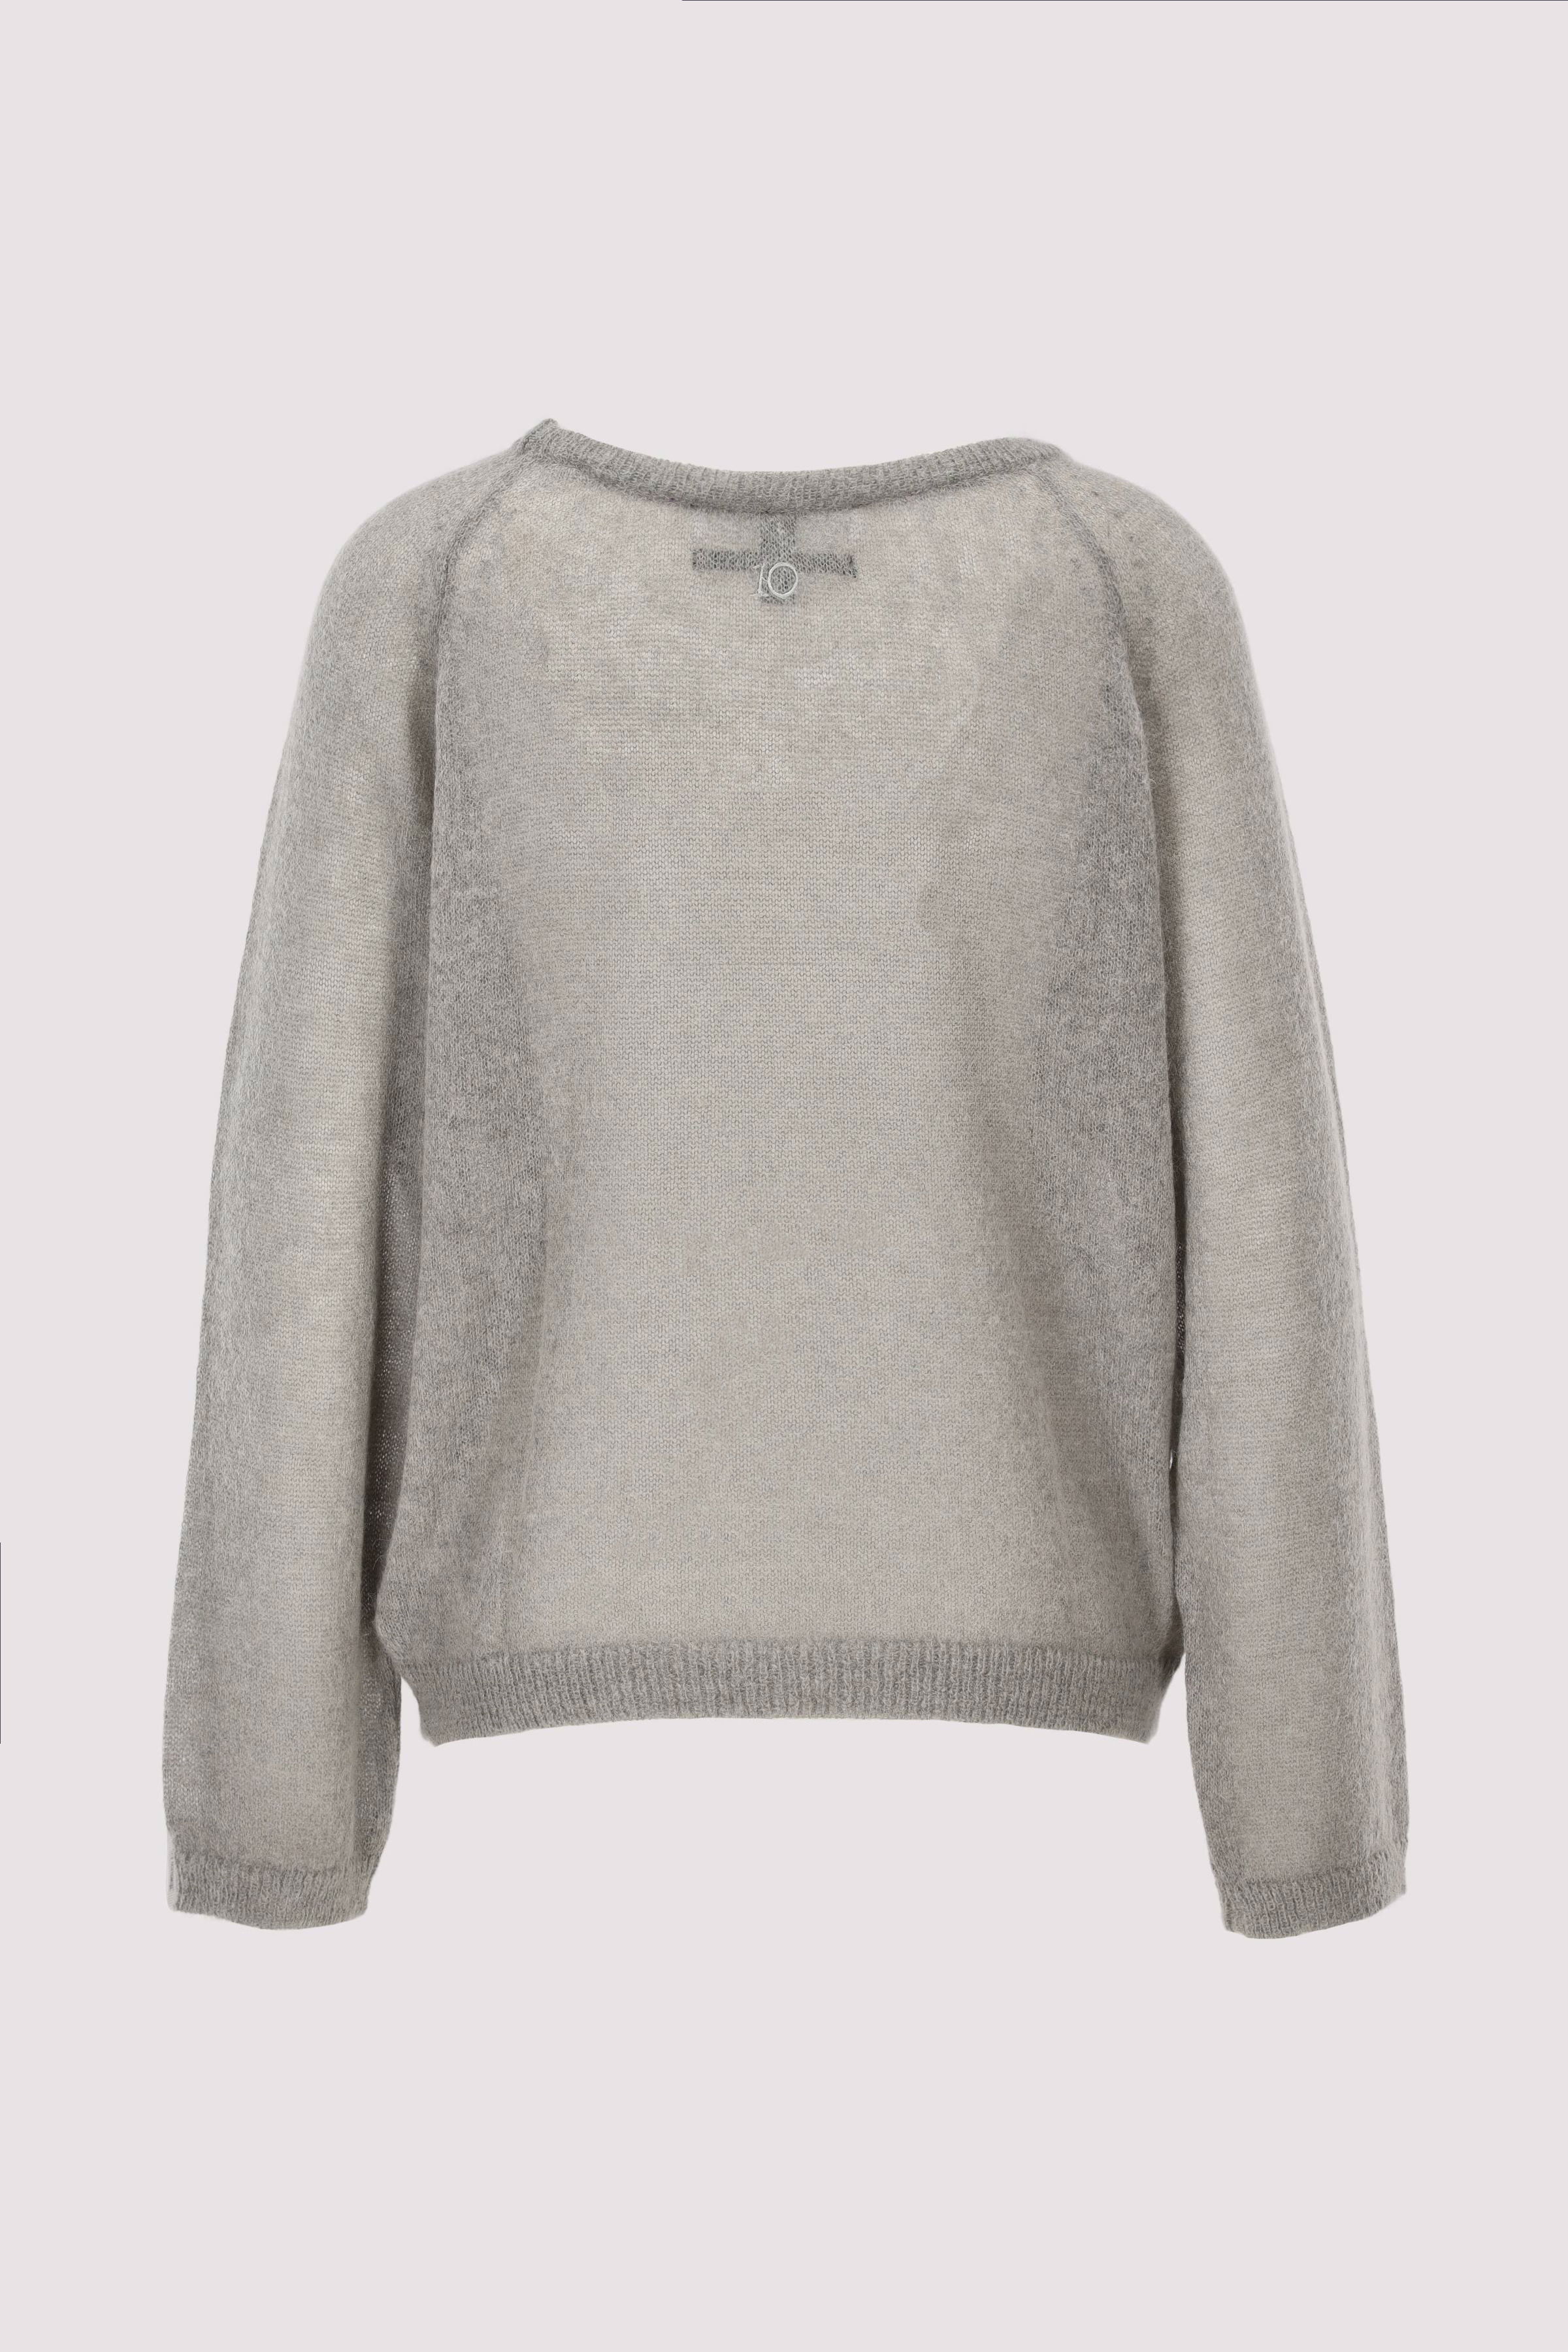 thin knit sweater